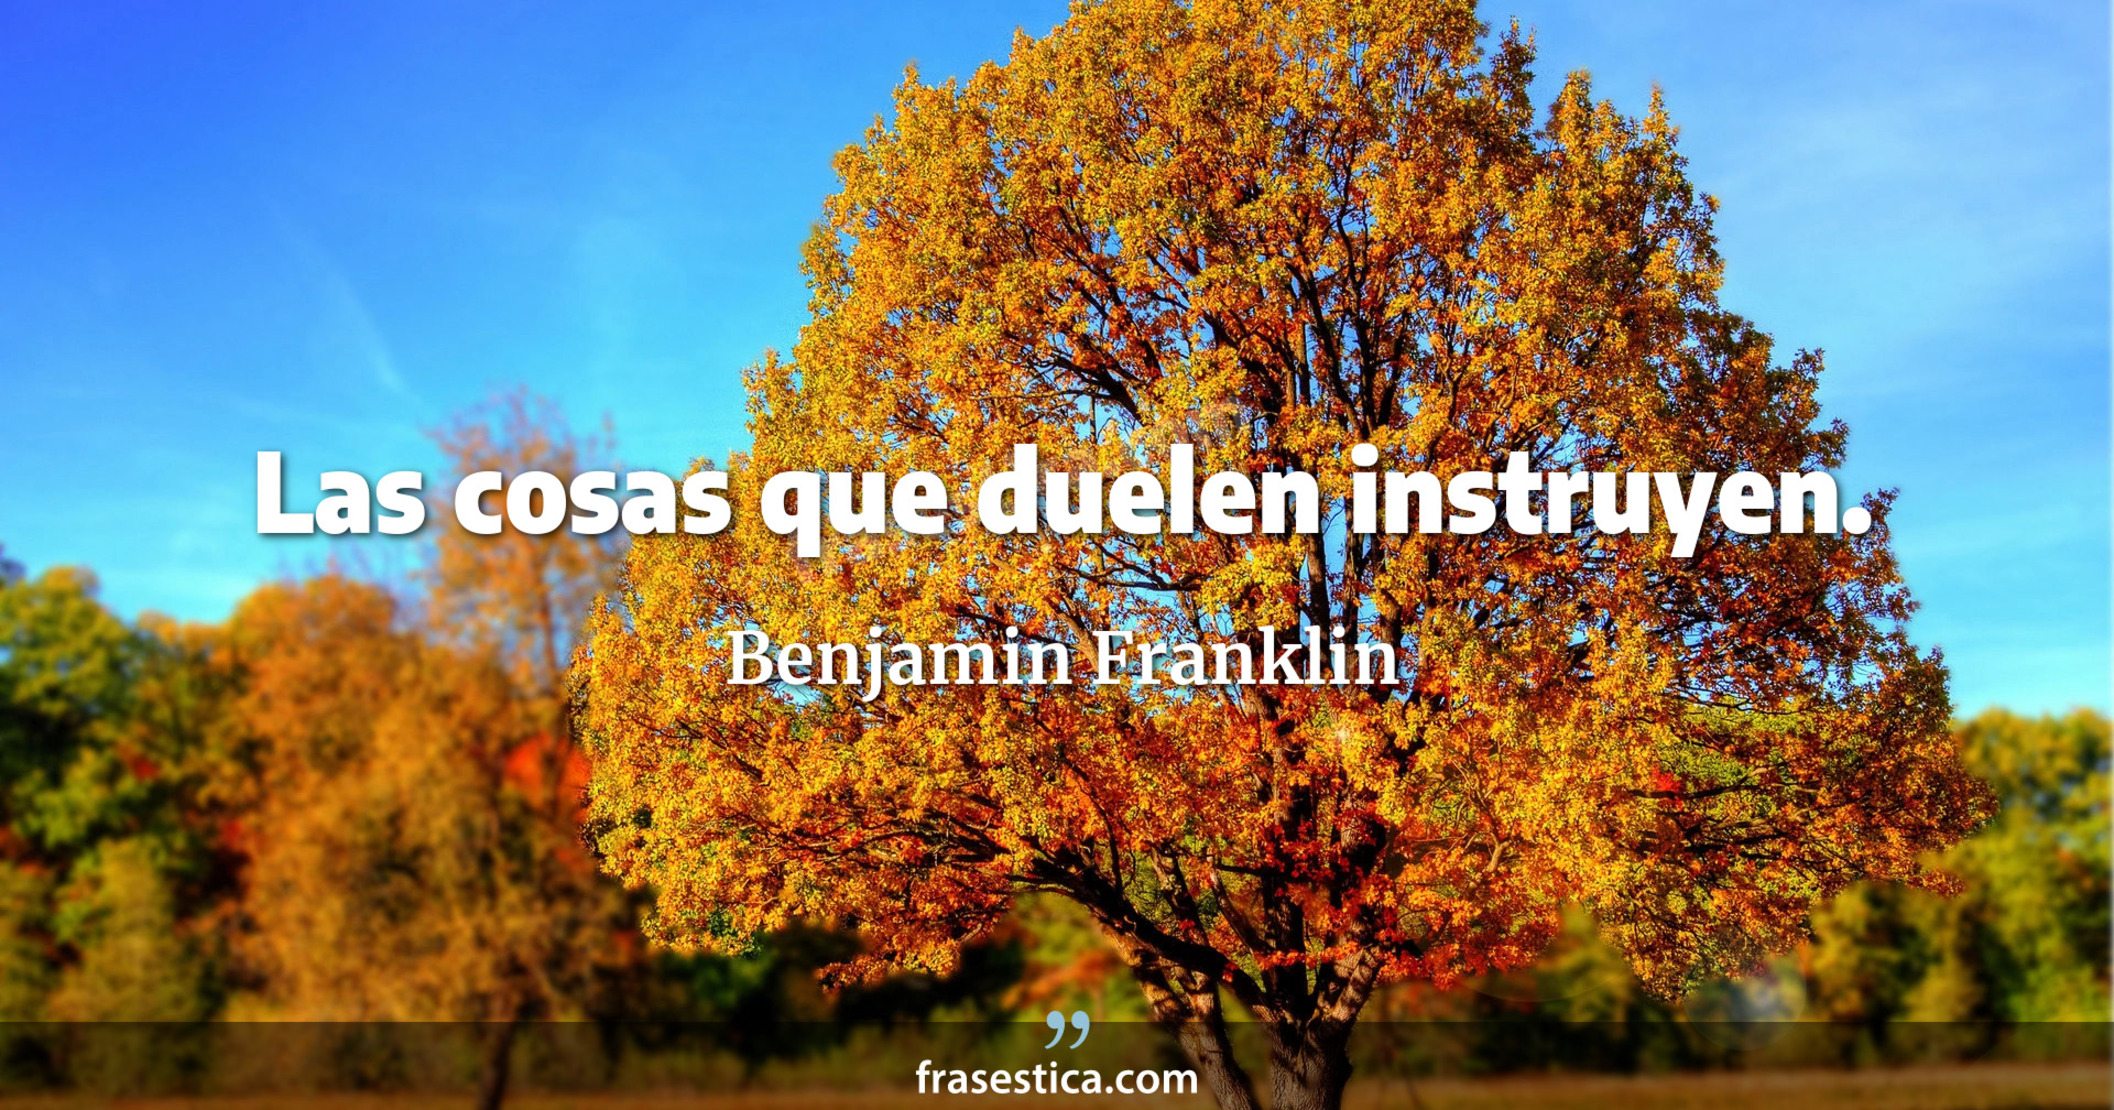 Las cosas que duelen instruyen. - Benjamin Franklin